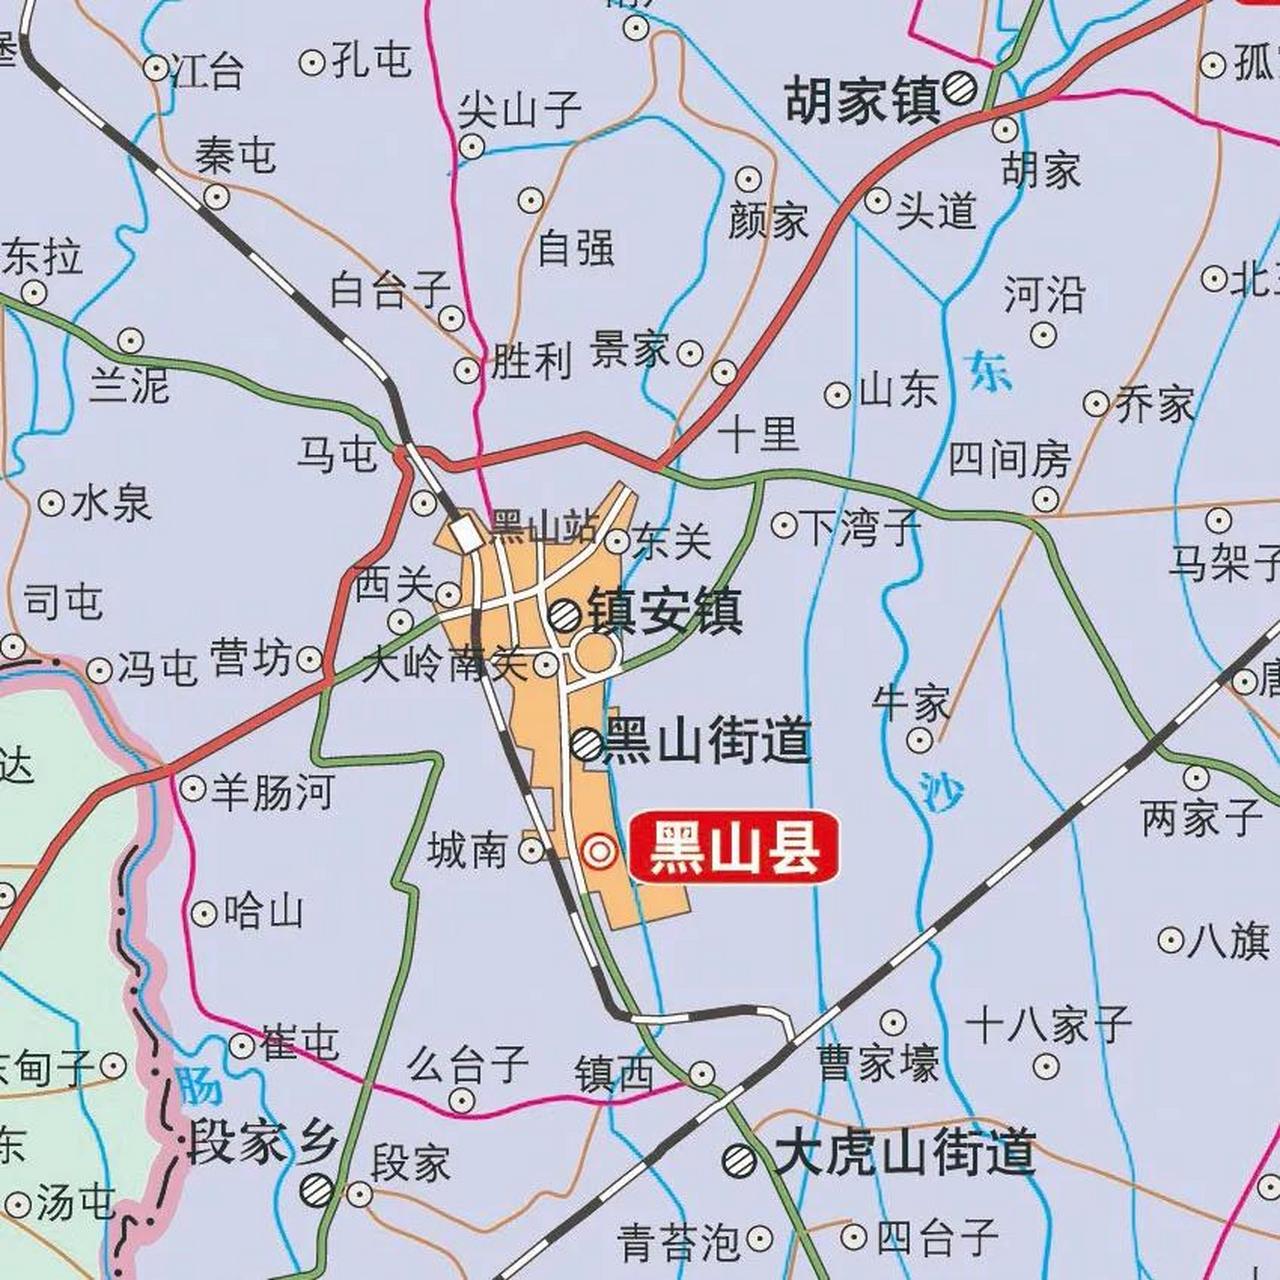 辽宁锦州市黑山县是连接东北与华北,沟通关内和关外的咽喉要道,自从京